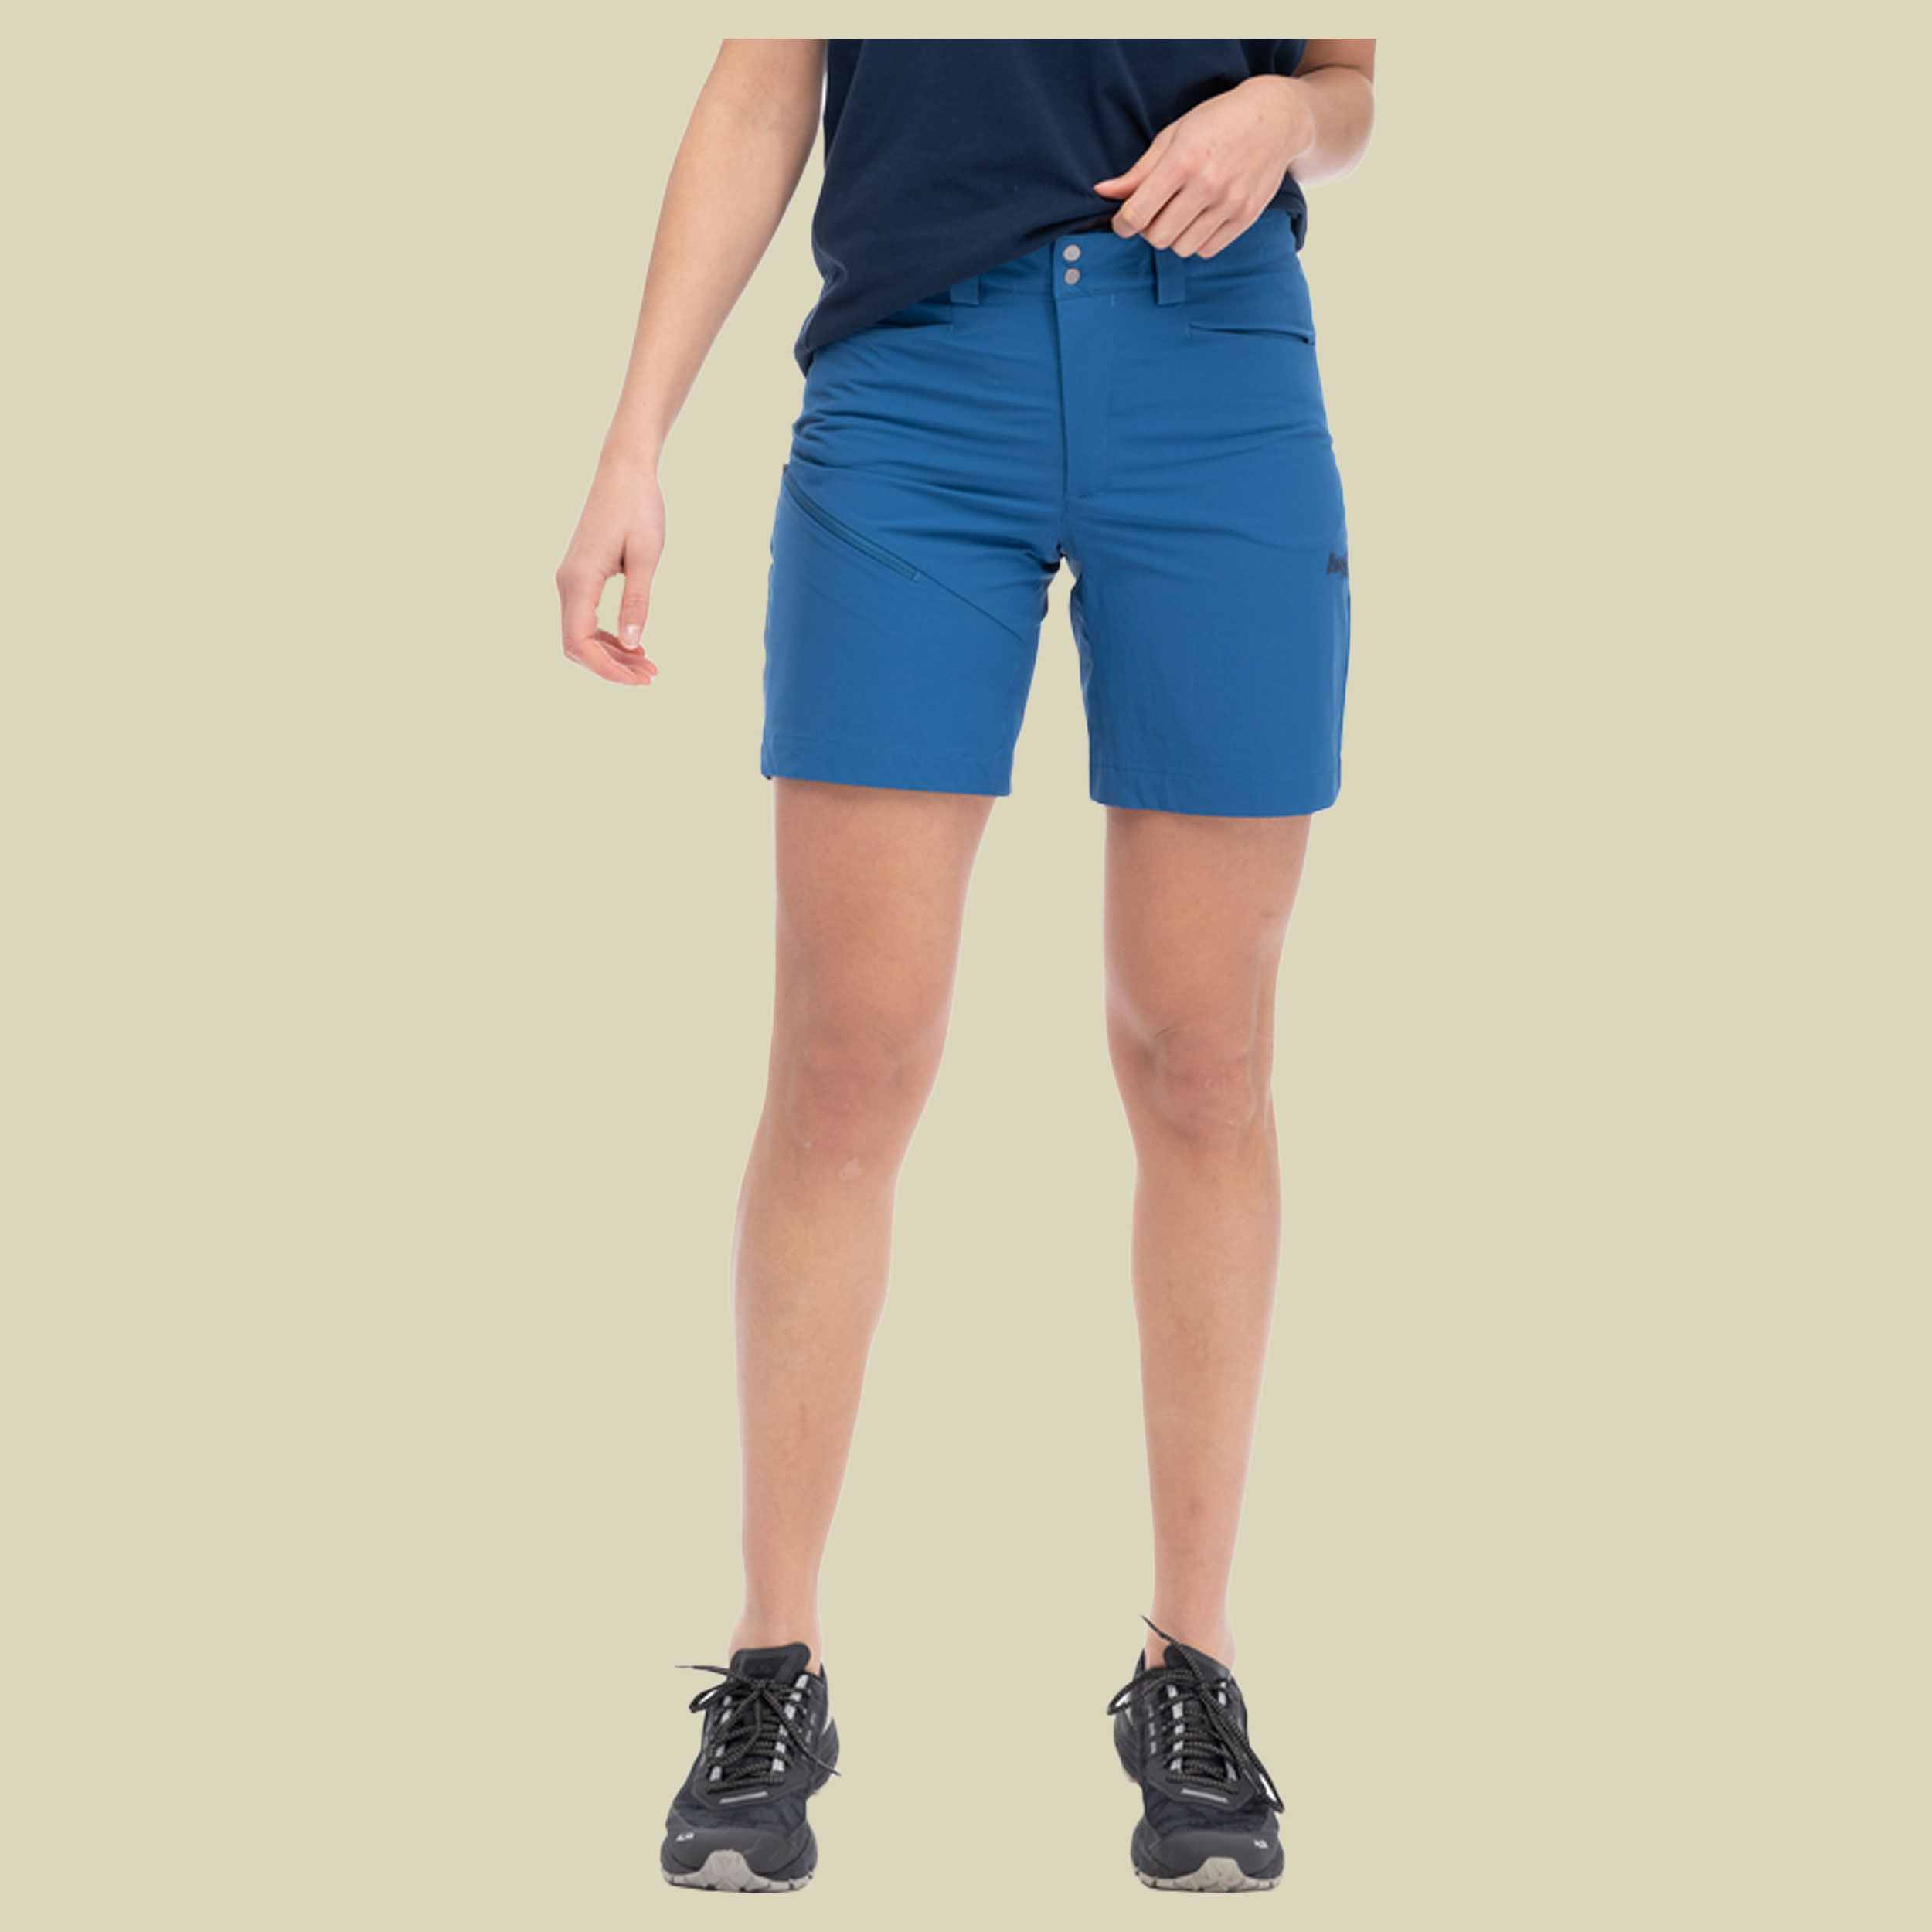 Vandre Light Softshell Shorts Women Größe 42 Farbe north sea blue